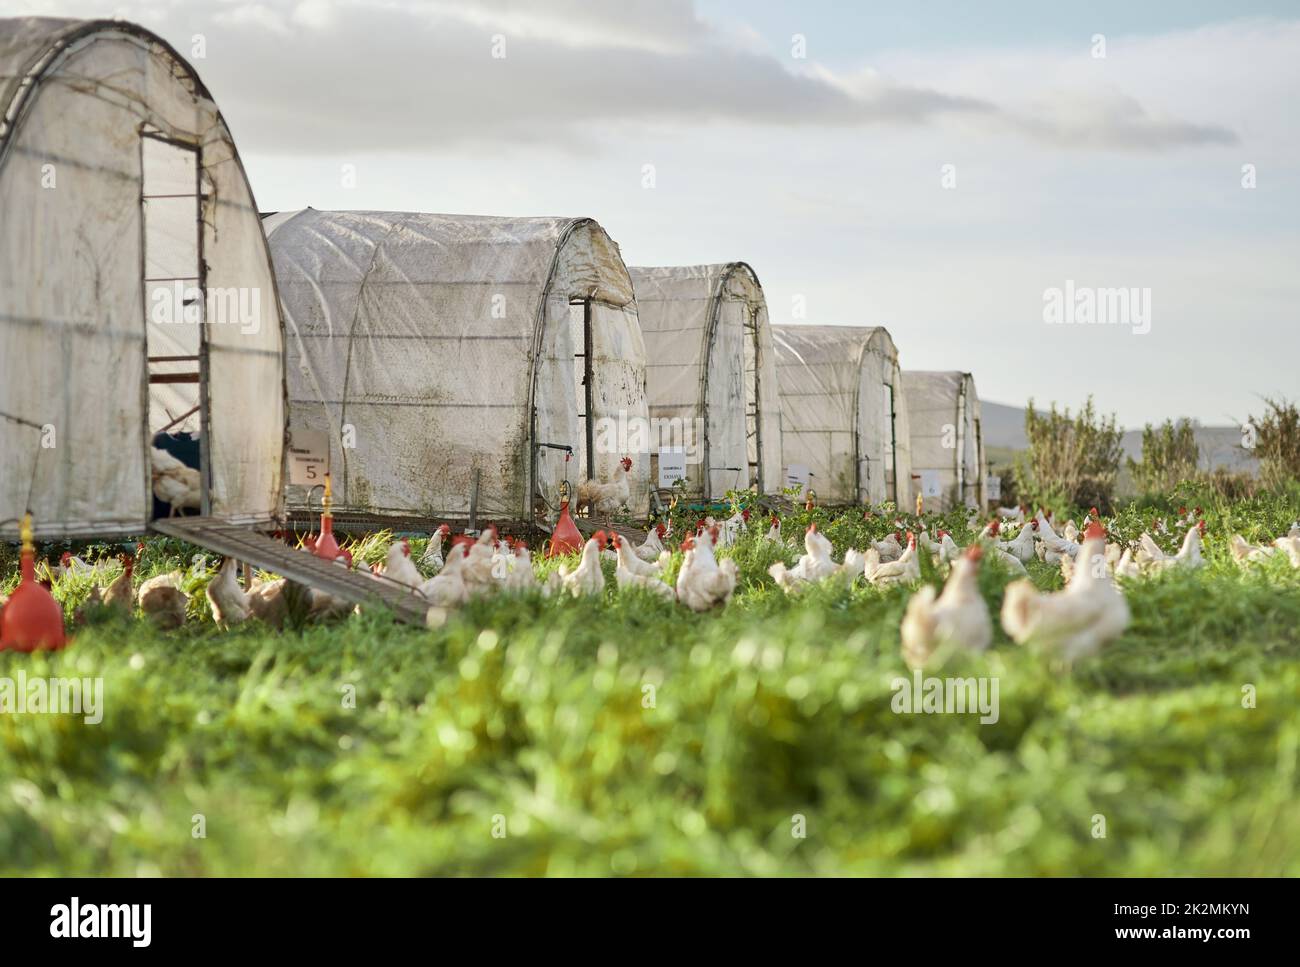 Hier müssen die Hühner ihren Urlaub verbringen. Aufnahme von Hühnern und einem Hühnerhaus auf einem Bauernhof. Stockfoto